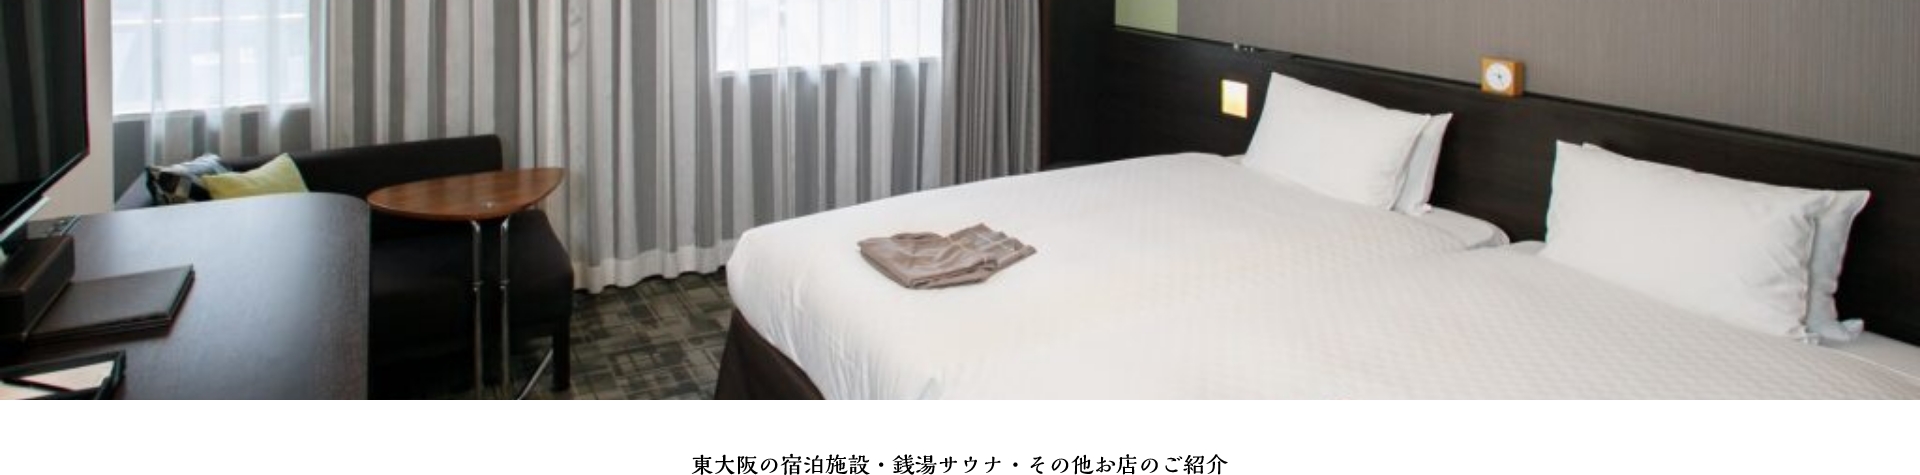 東大阪を楽しめる宿泊施設を ご紹介